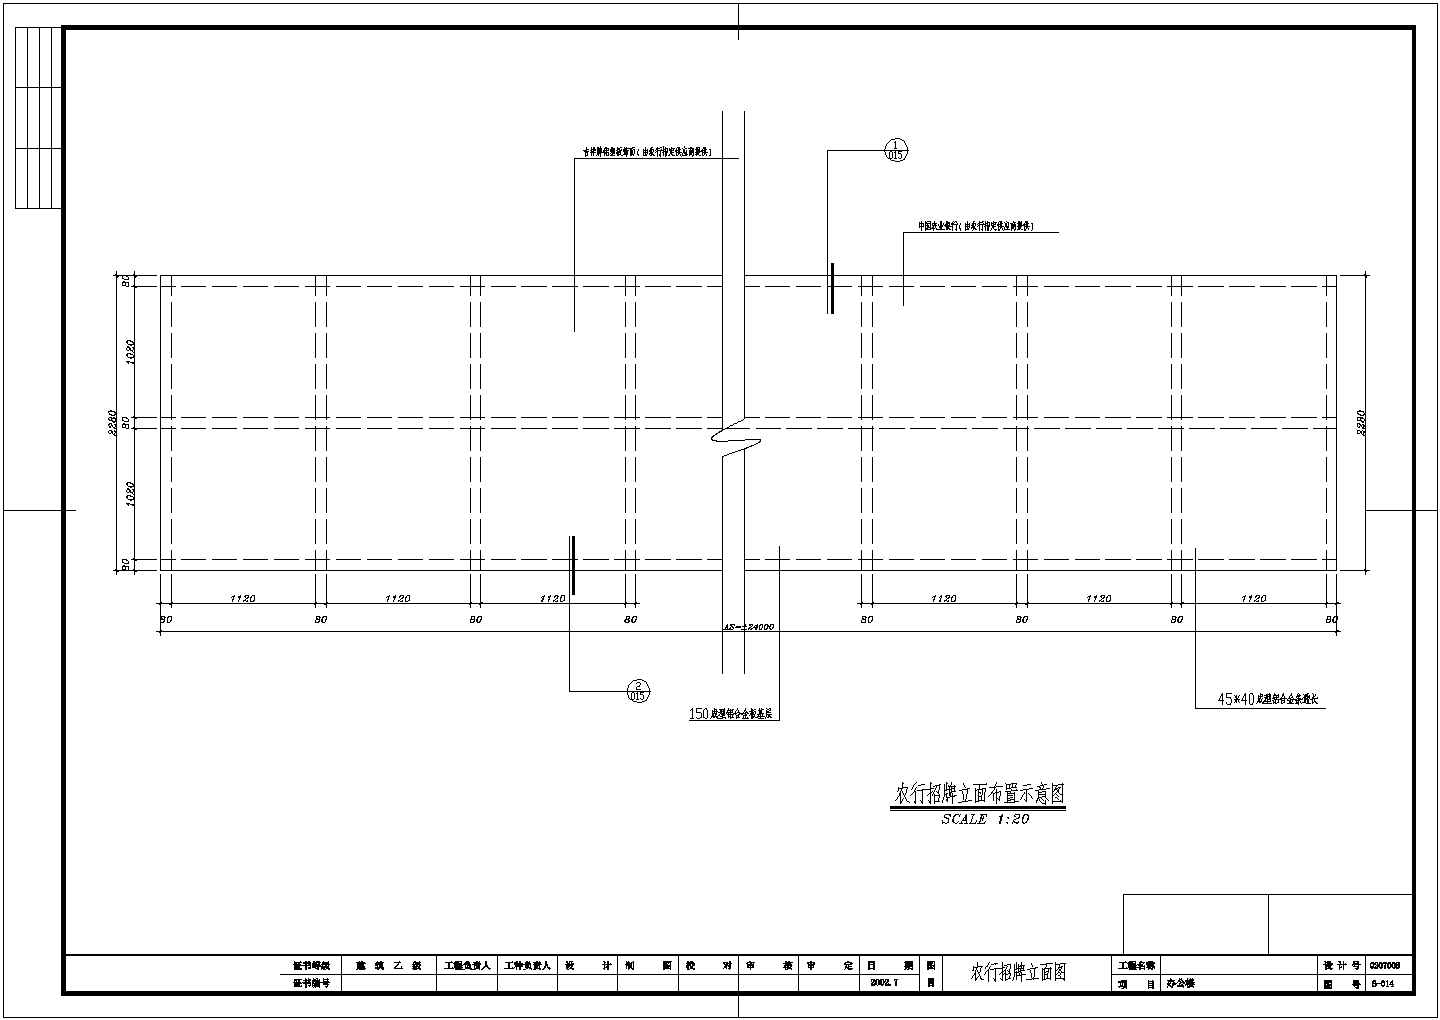 山东省某市农行办公楼全套装修设计CAD图纸